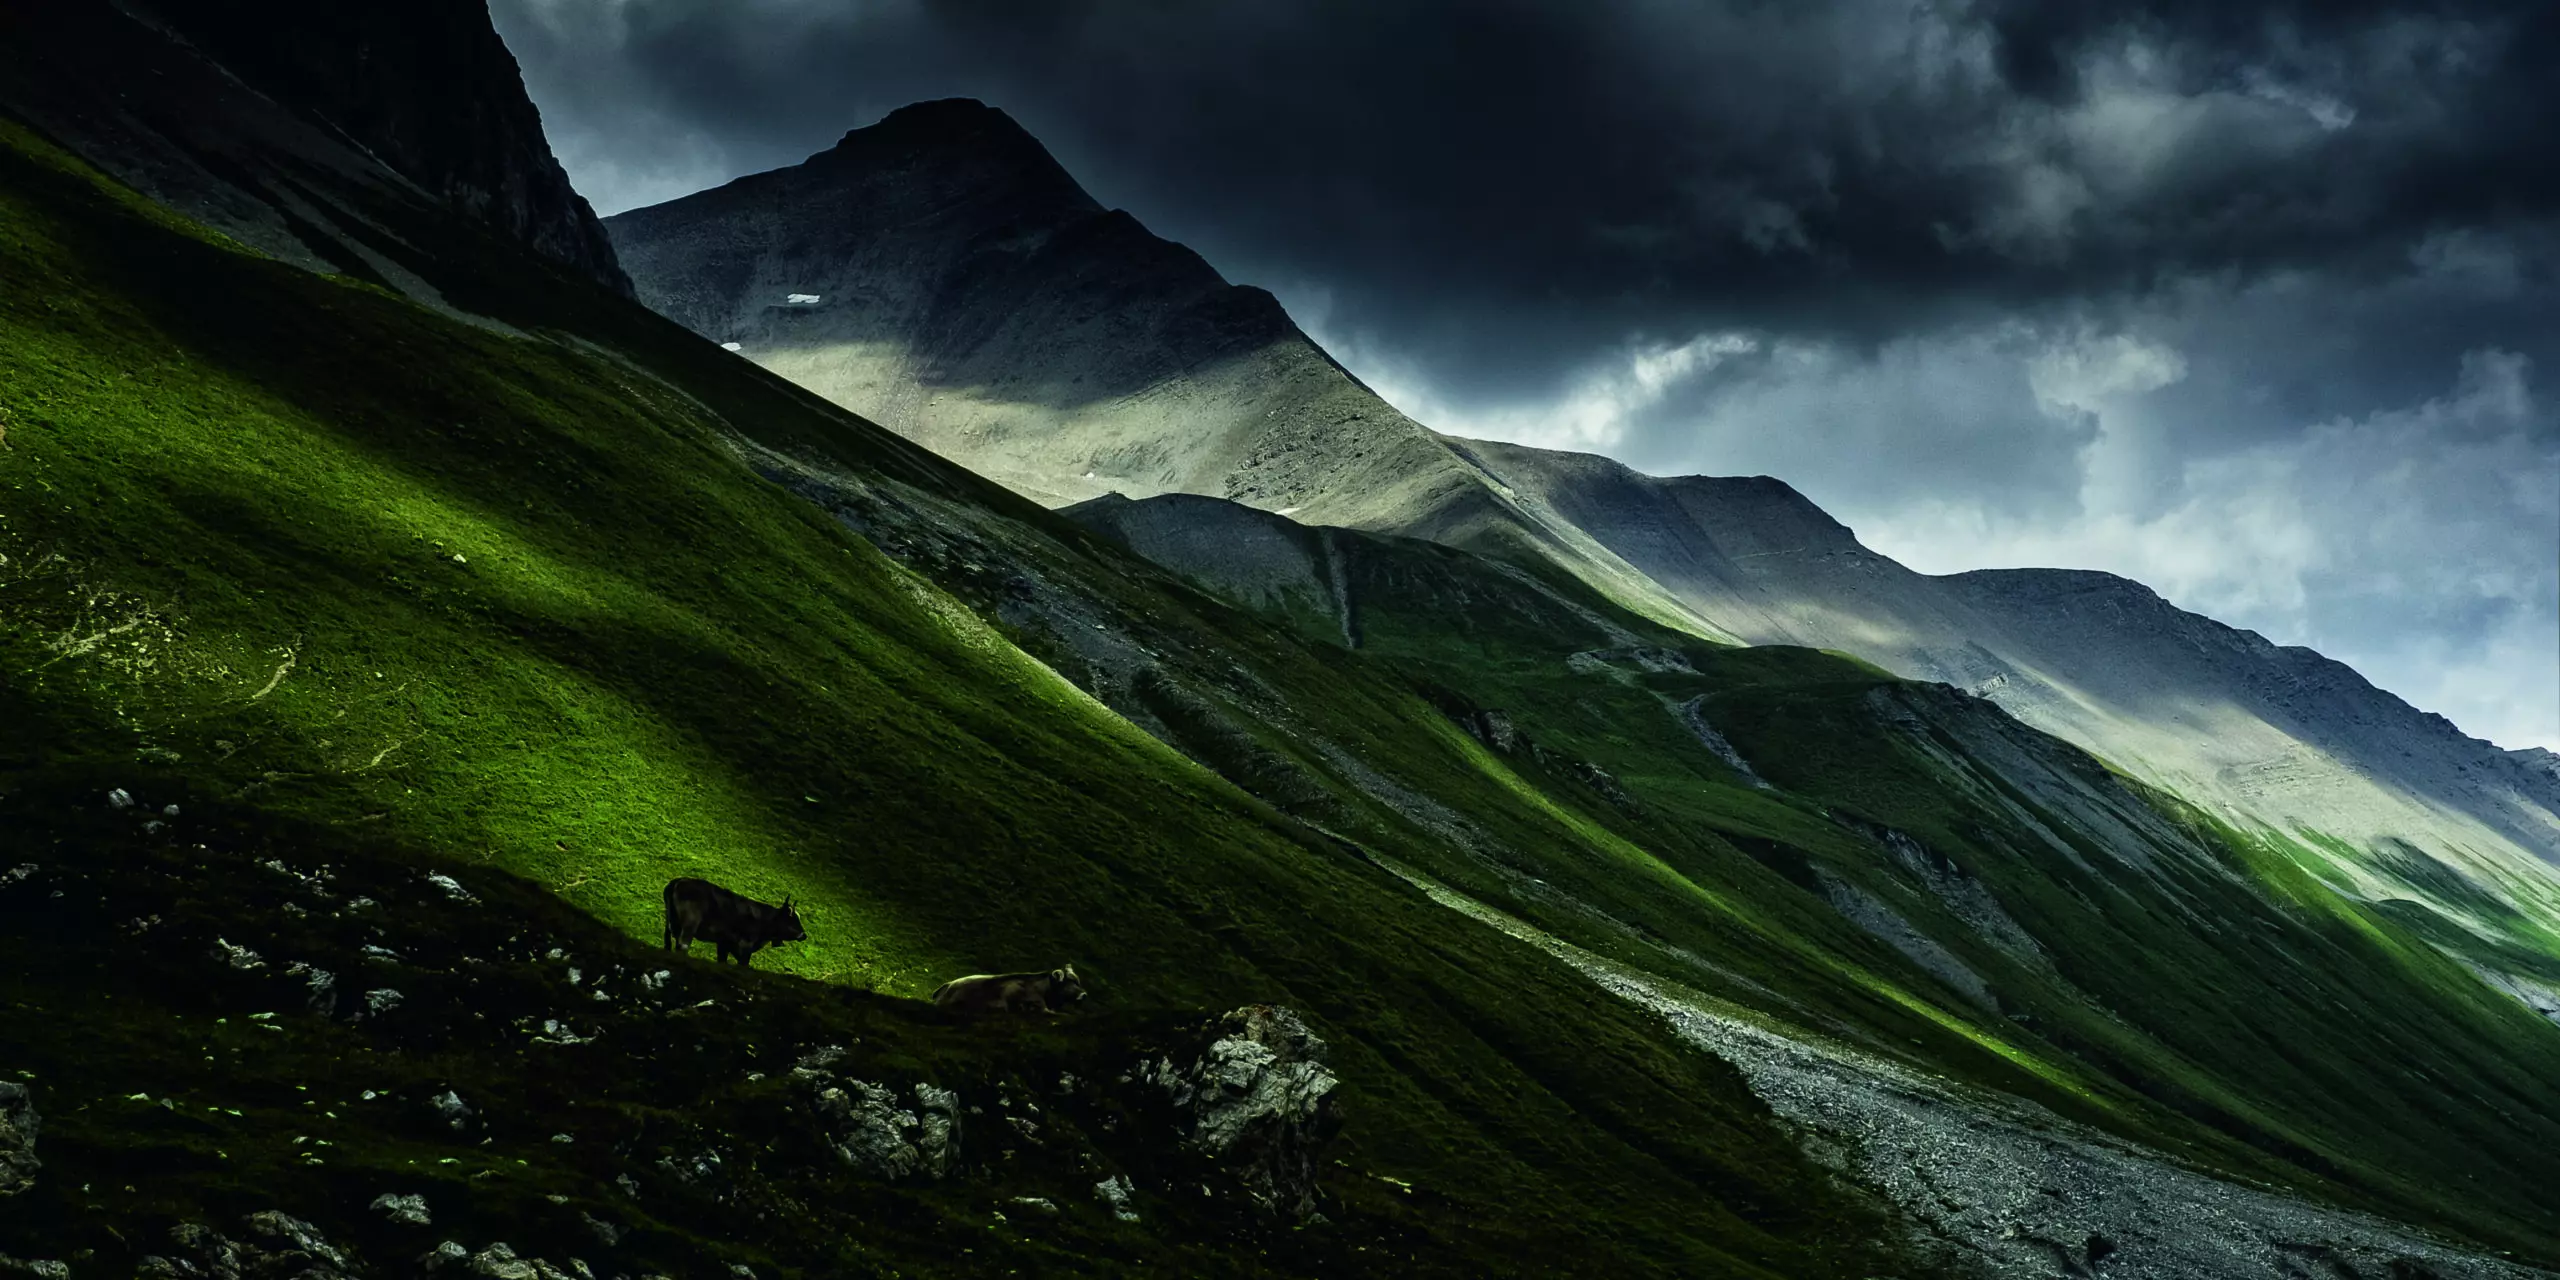 Wandbild (3058) Albula Pass, Switzerland präsentiert: Landschaften,Berge